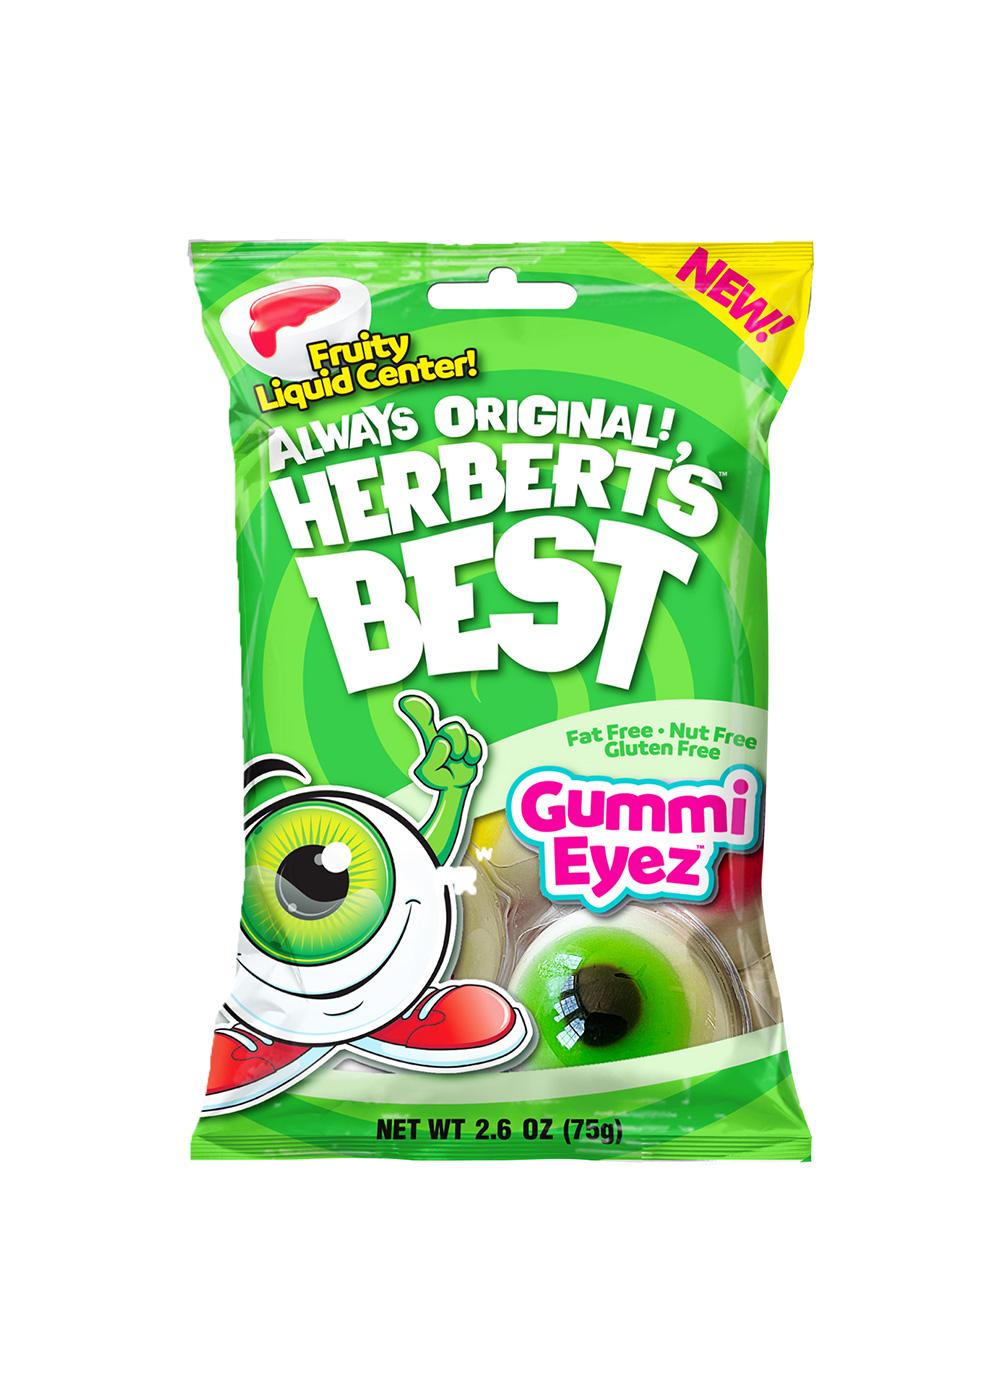 Herbert's Best Gummi Eyez Candy; image 1 of 3